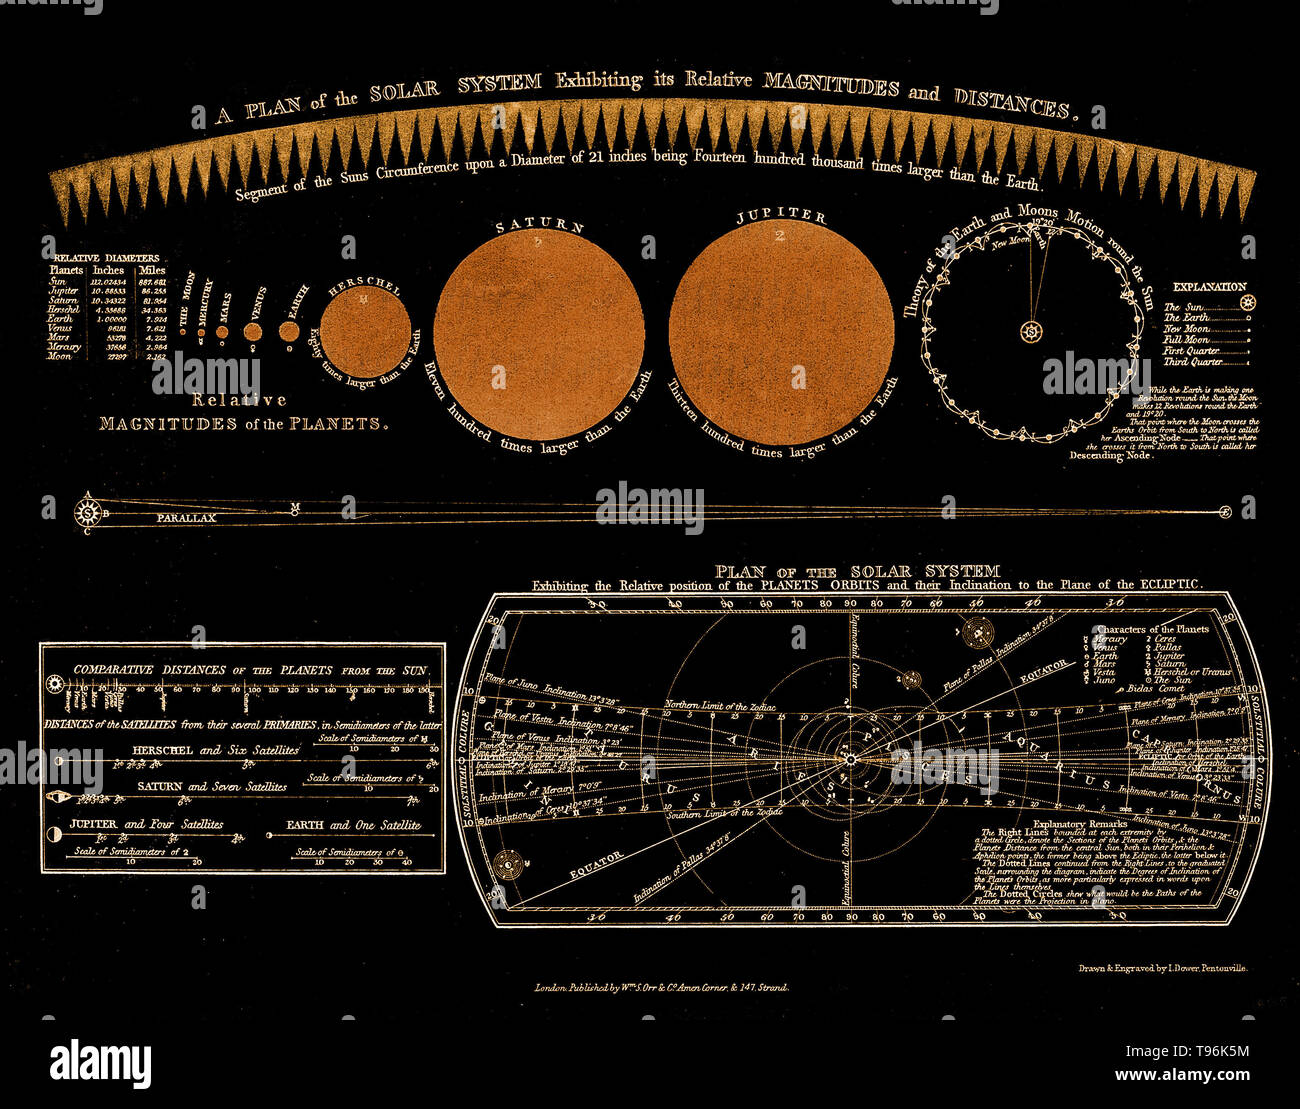 Einen Plan des Sonnensystems, ausstellenden relative Größen und Entfernungen. Der Planet Uranus hier aufgerufen wird Herschel. Historische Gravur, 18. Wilhelm Herschel entdeckte Uranus am 13. März 1781, die Erweiterung der bekannten Grenzen des Sonnensystems und ist damit der erste Planet mit einem Teleskop entdeckt. Konsens über den Namen wurde erst fast 70 Jahre nach der Entdeckung des Planeten erreicht. Stockfoto